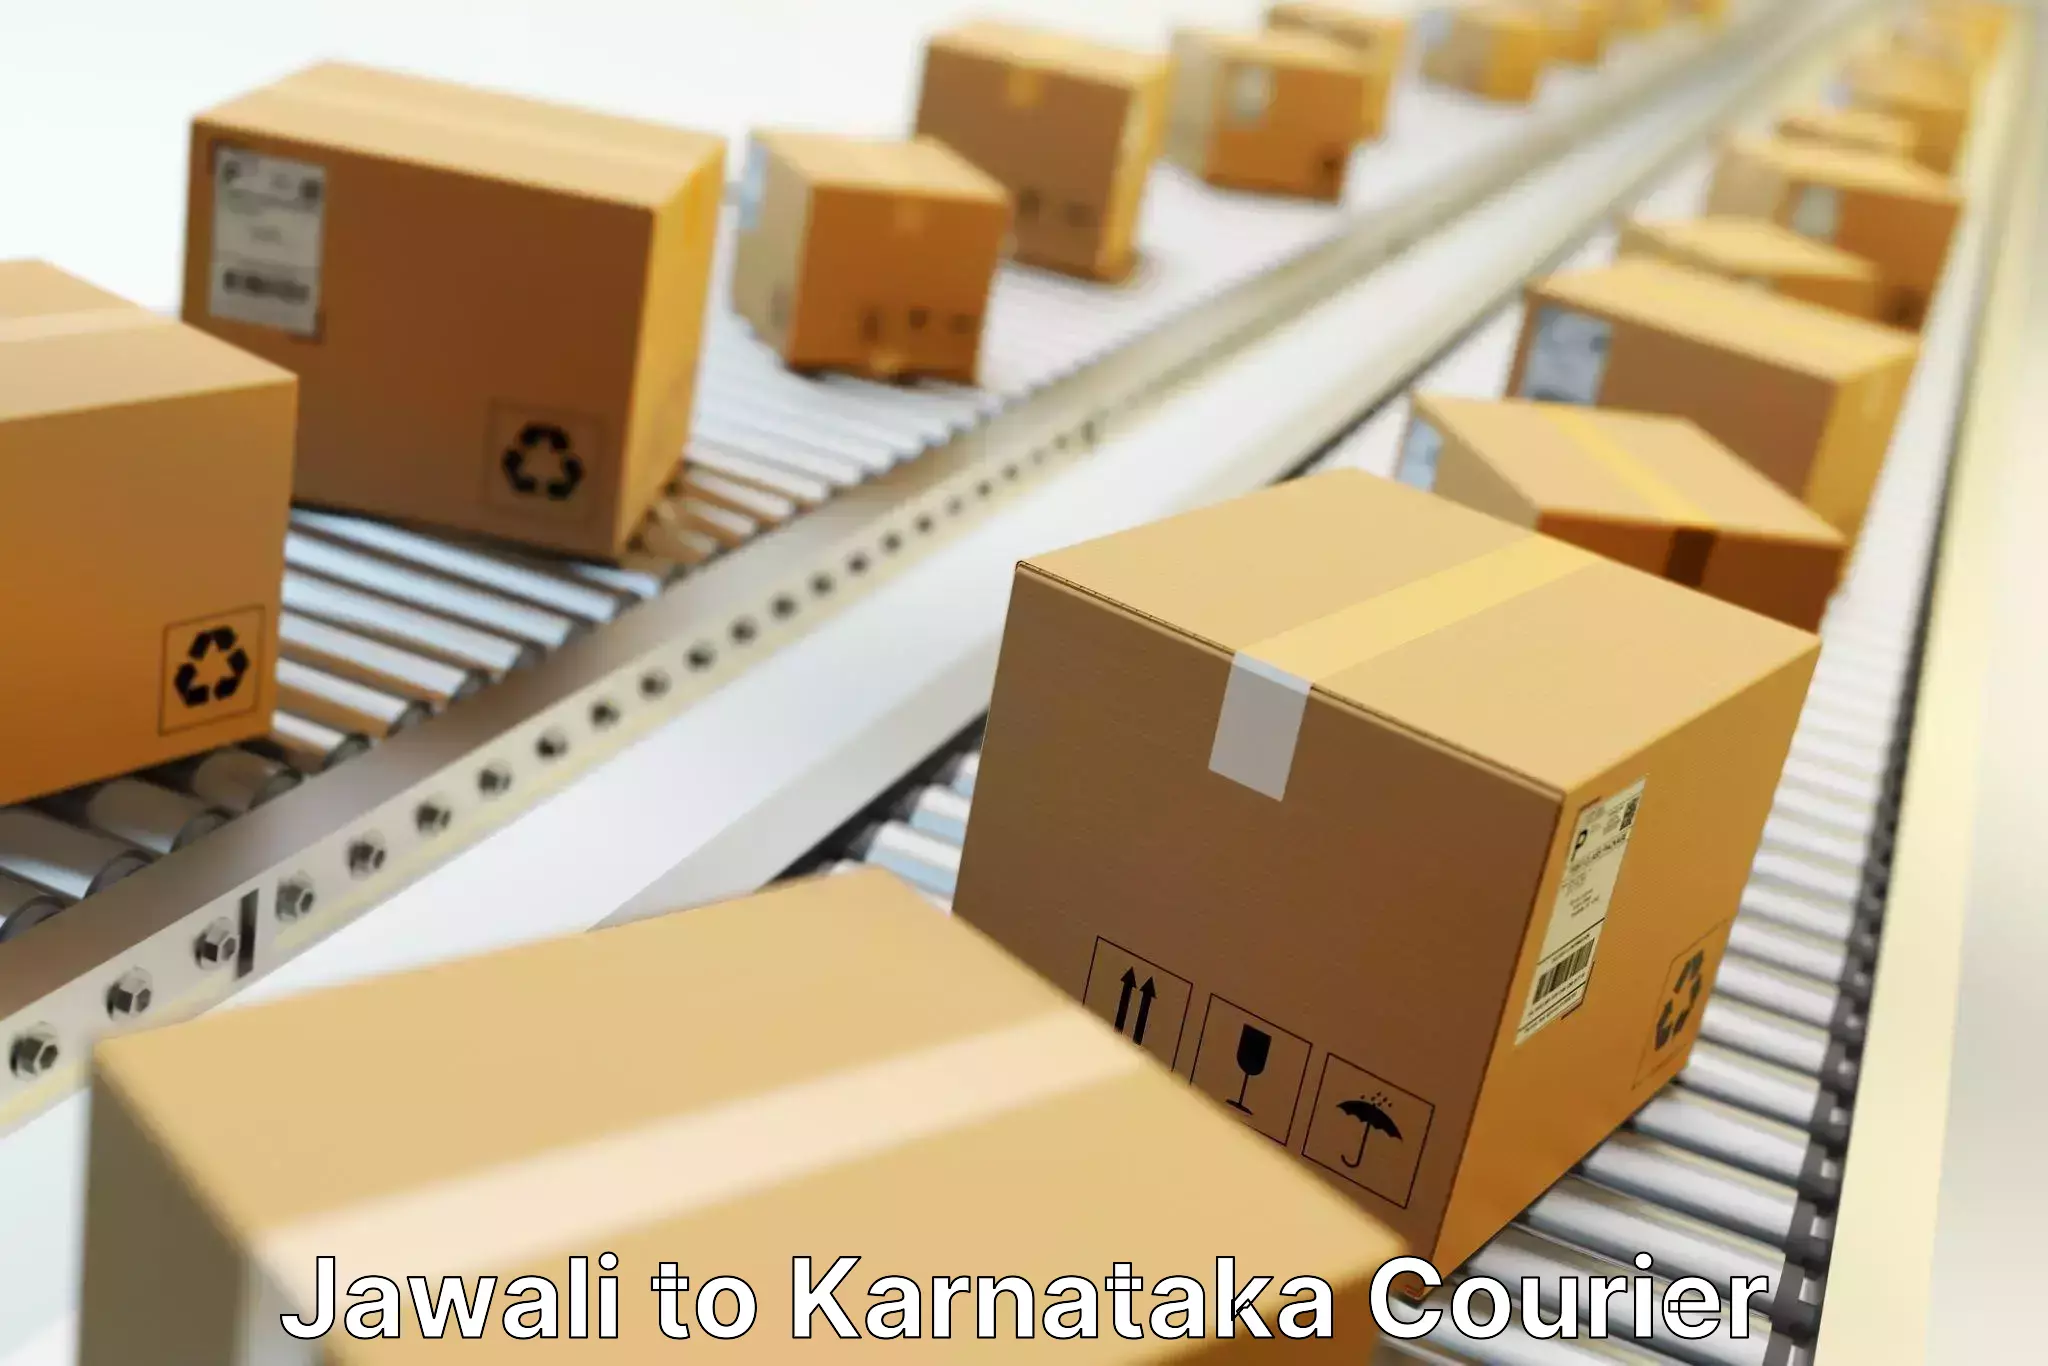 Modern parcel services Jawali to Karnataka